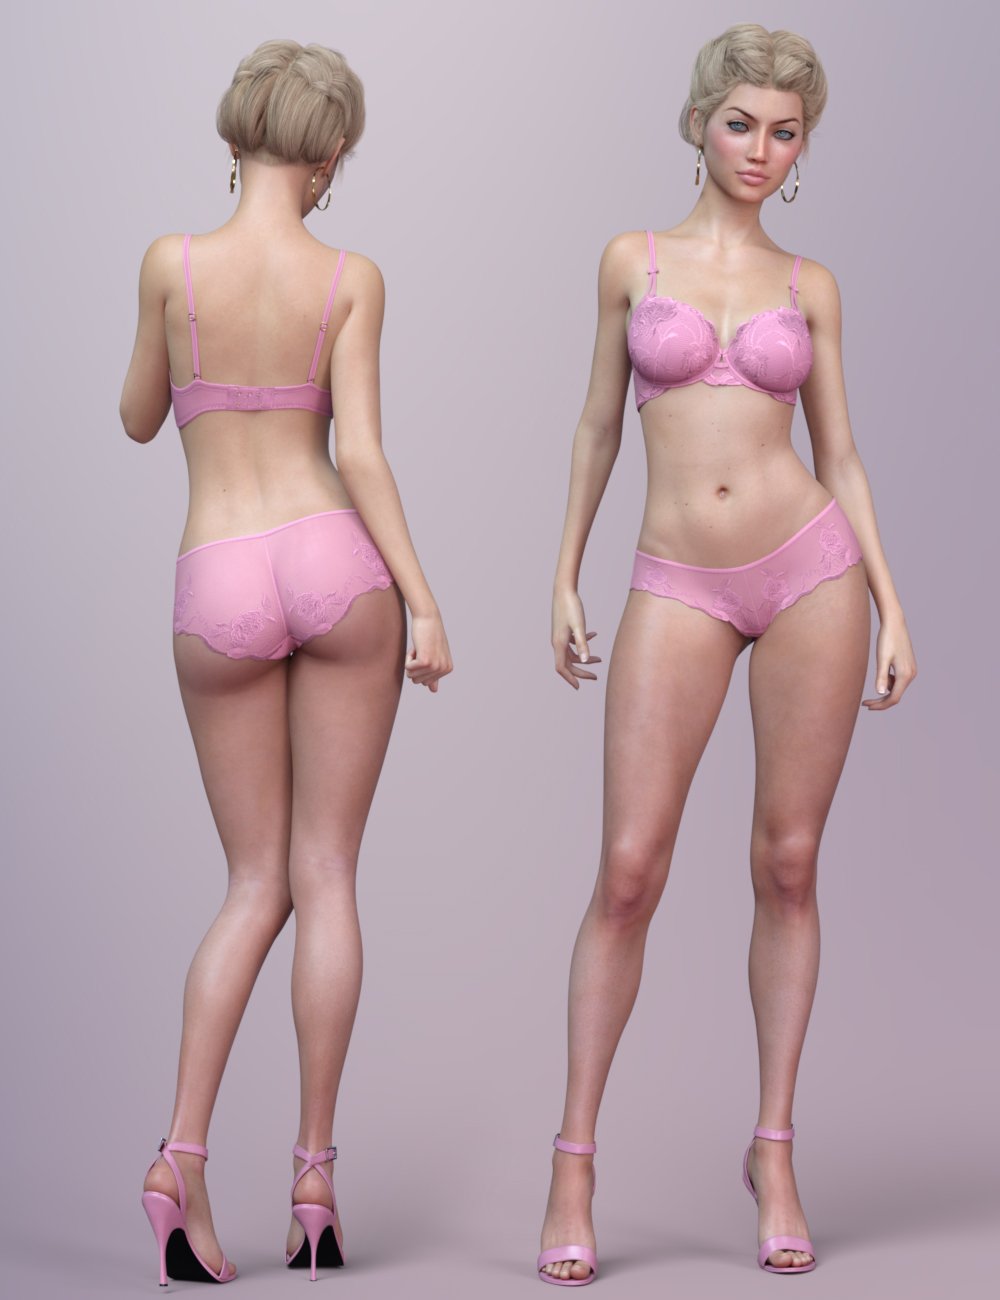 Andrea for Genesis 3 Female by: Freja, 3D Models by Daz 3D